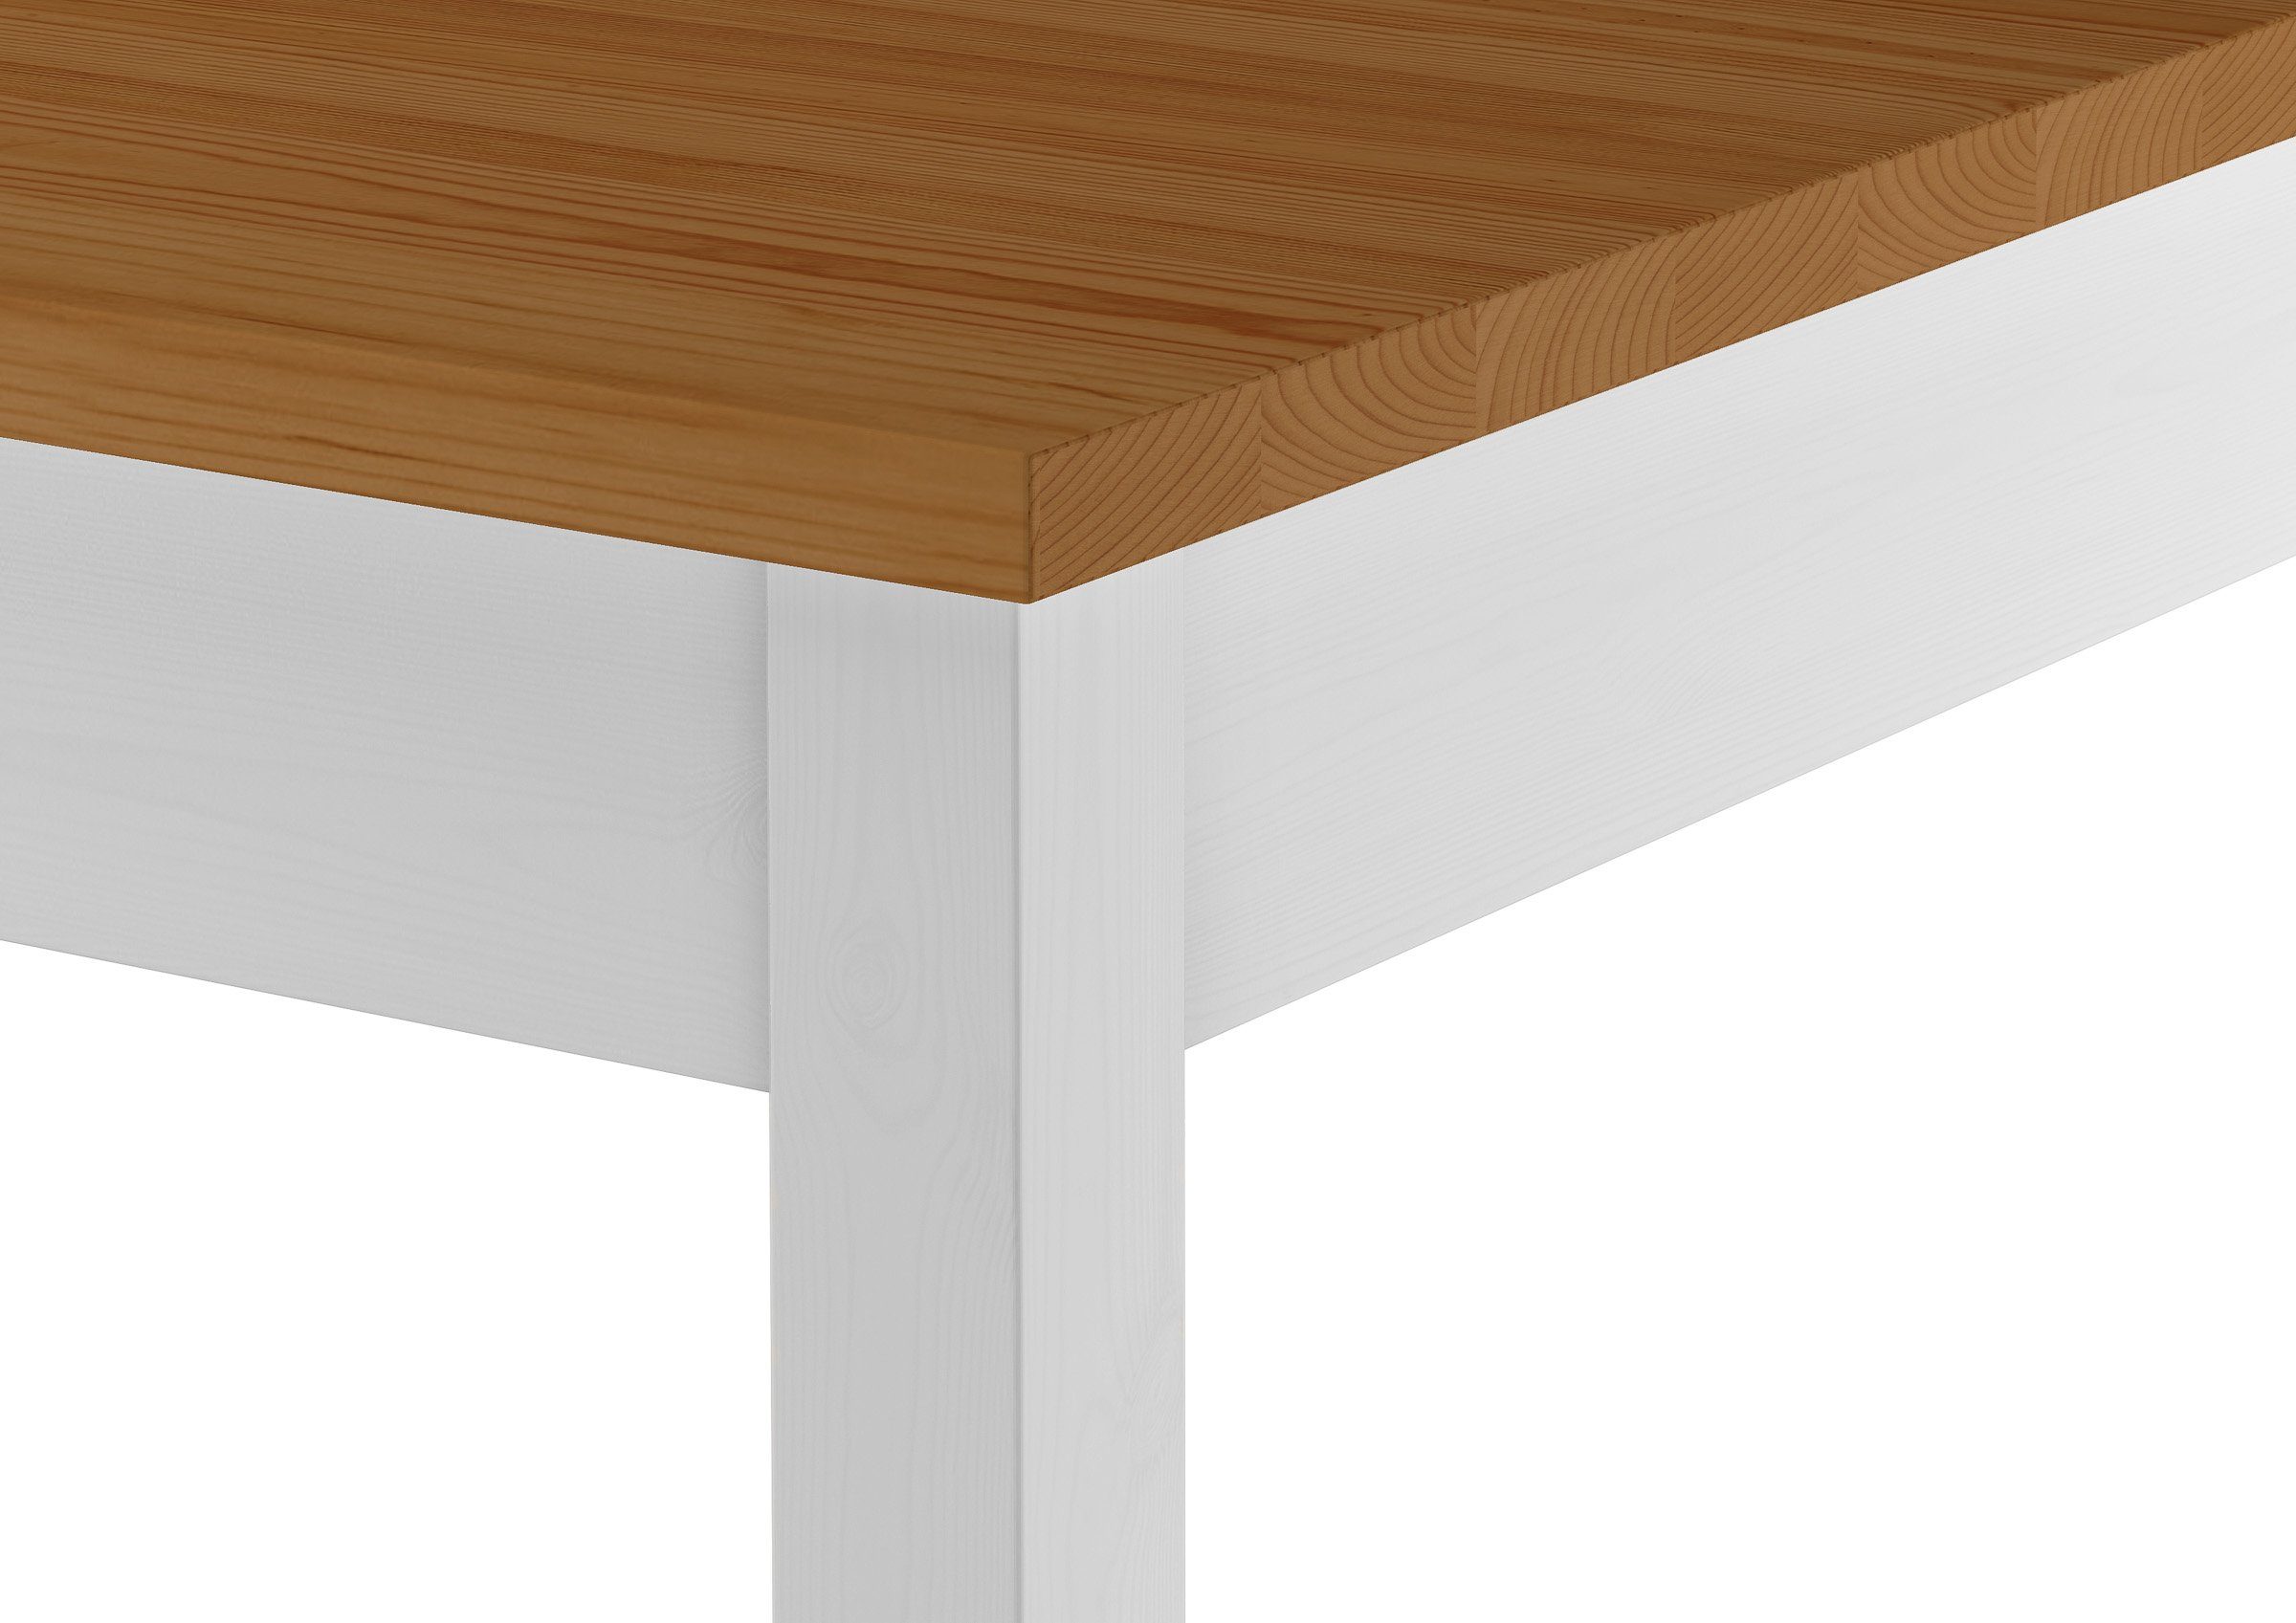 ERST-HOLZ Eichefarben Massivholz Esstisch Beine weiße 80x120 Tischplatte Tisch Küchentisch